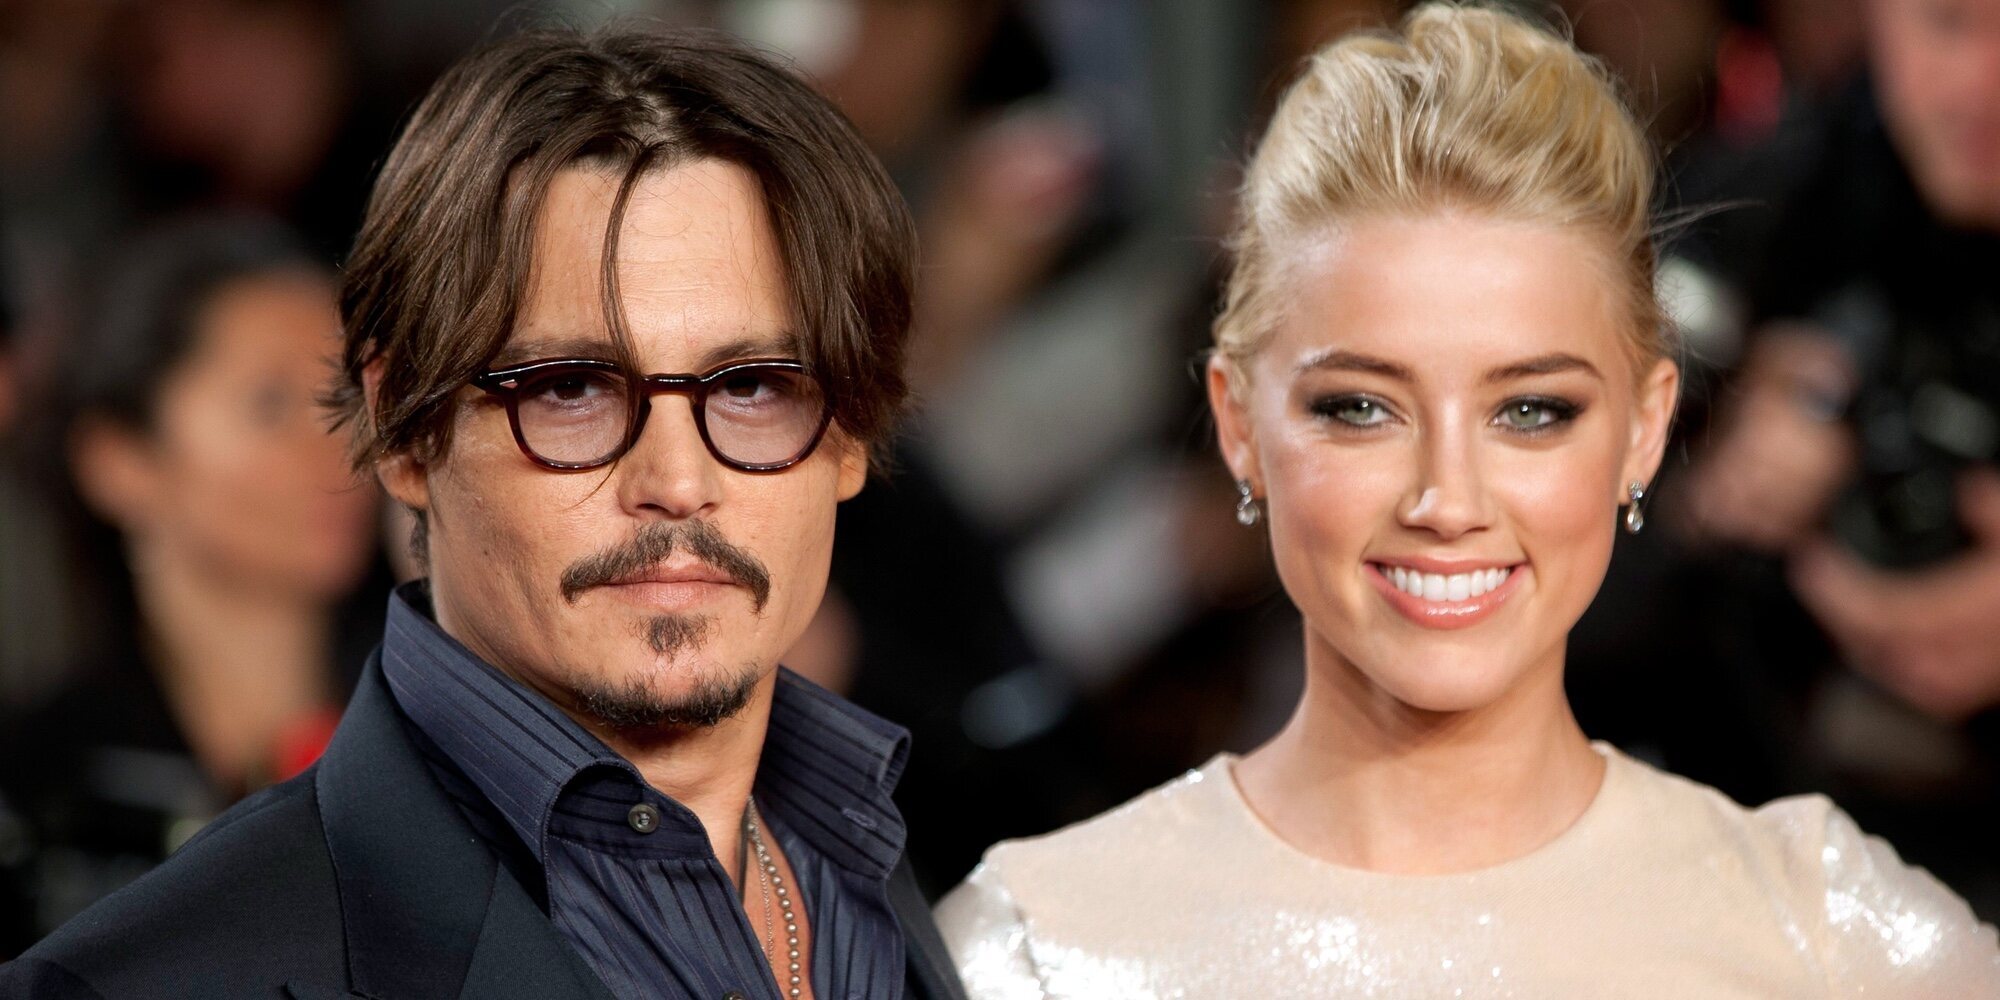 Sale a la luz el desagradable incidente que terminó con el matrimonio entre Johnny Depp y Amber Heard